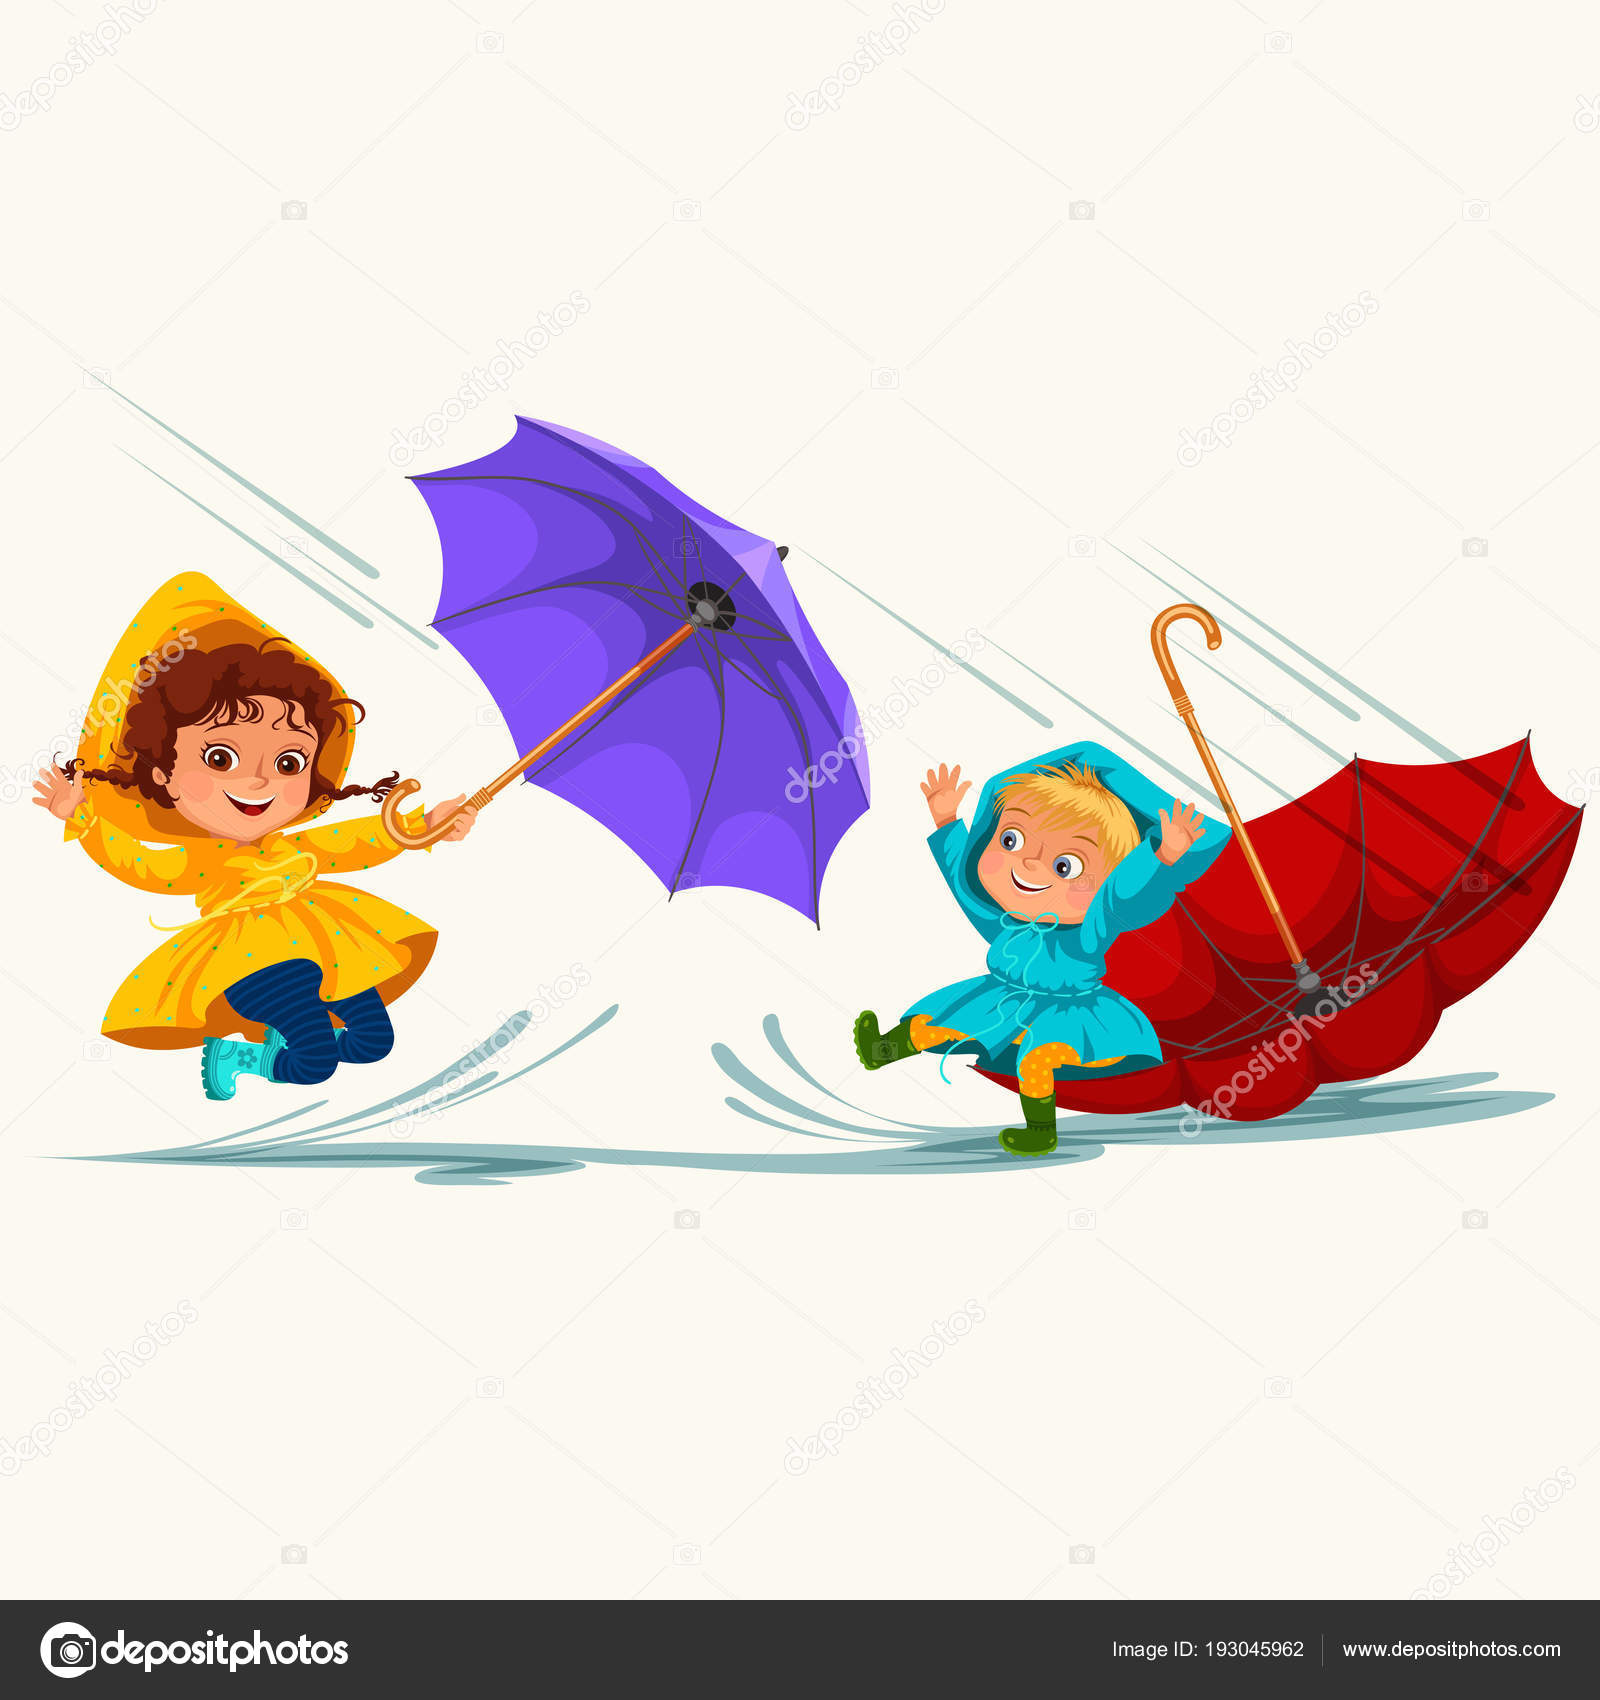 Está chovendo, está caindo um pé d'água ☔ Canções para crianças